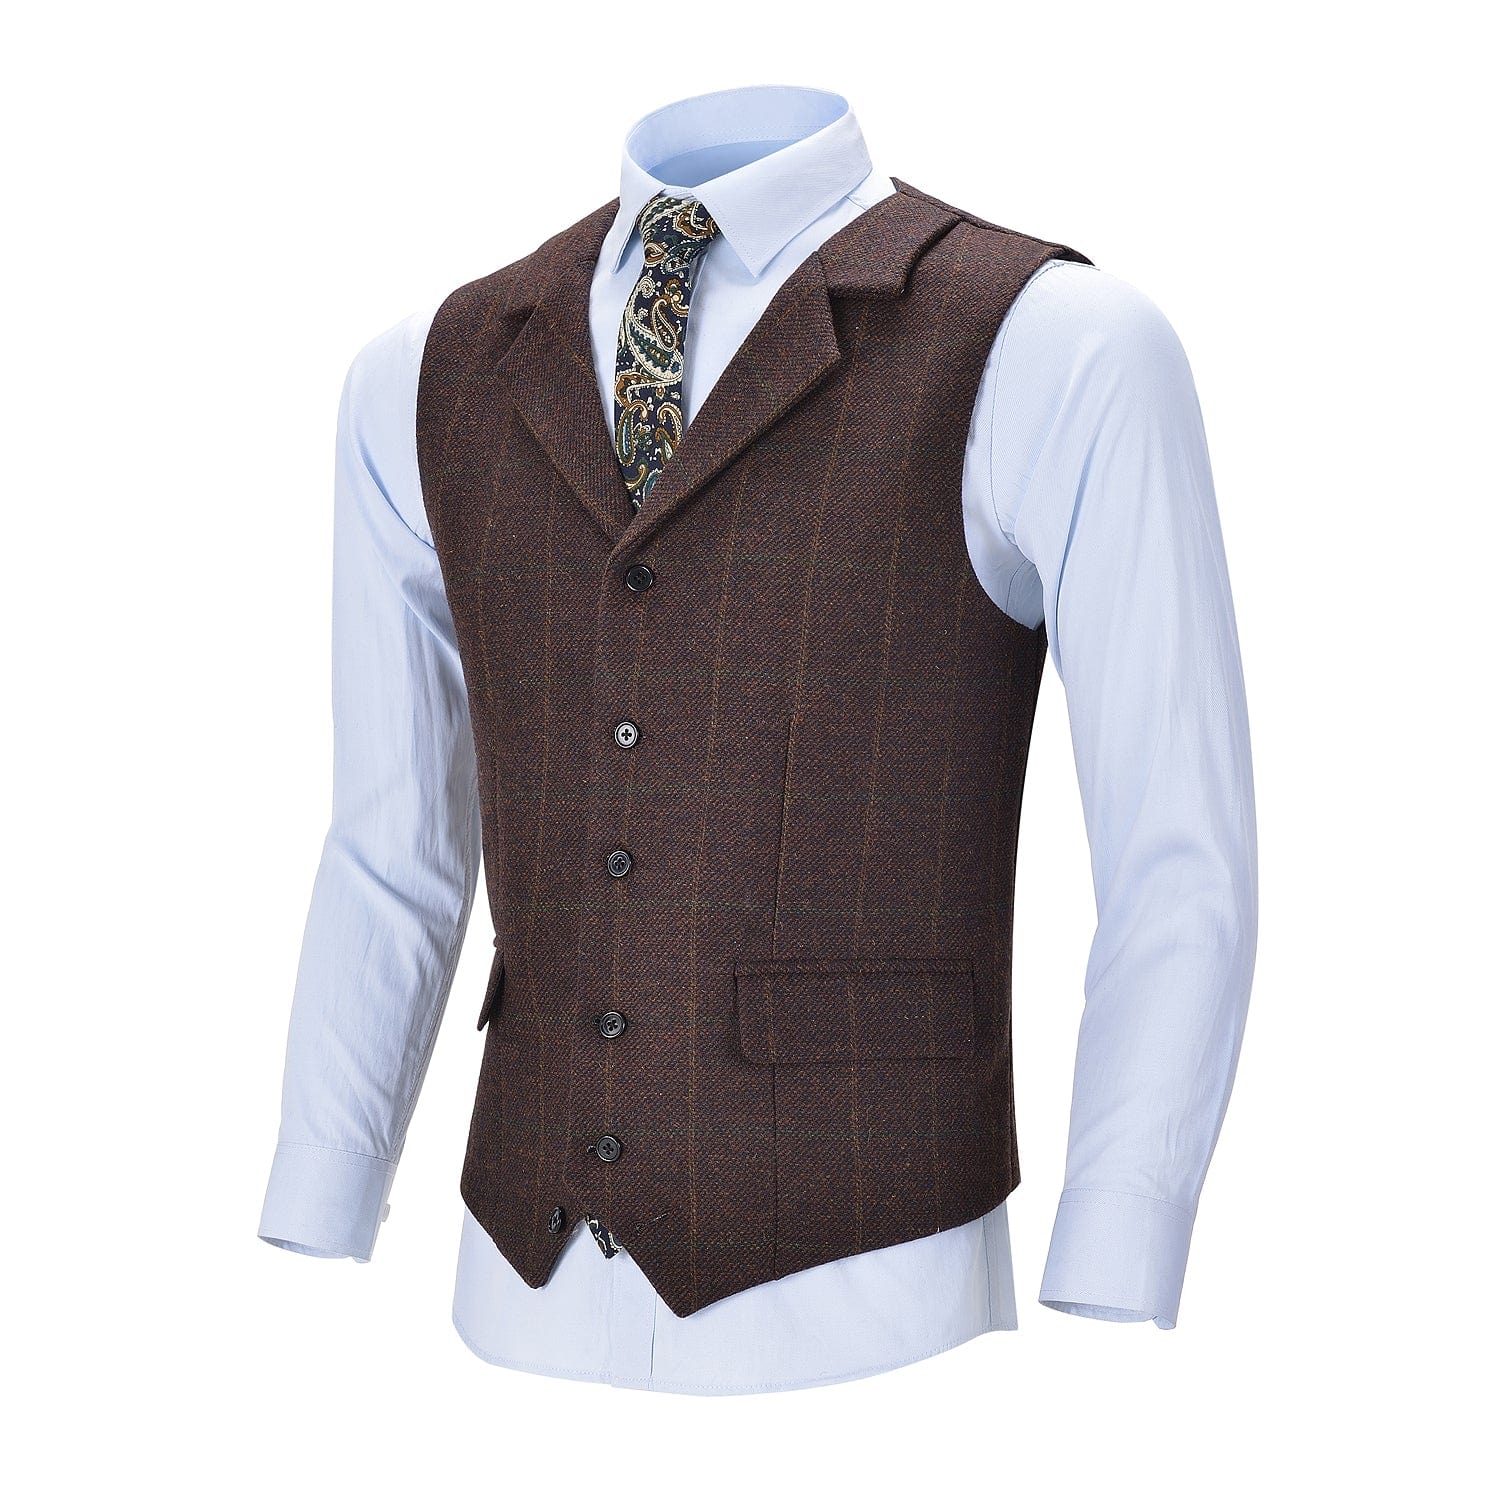 ceehuteey Men's Formal Notch Lapel Suit Vest Plaid Waistcoat